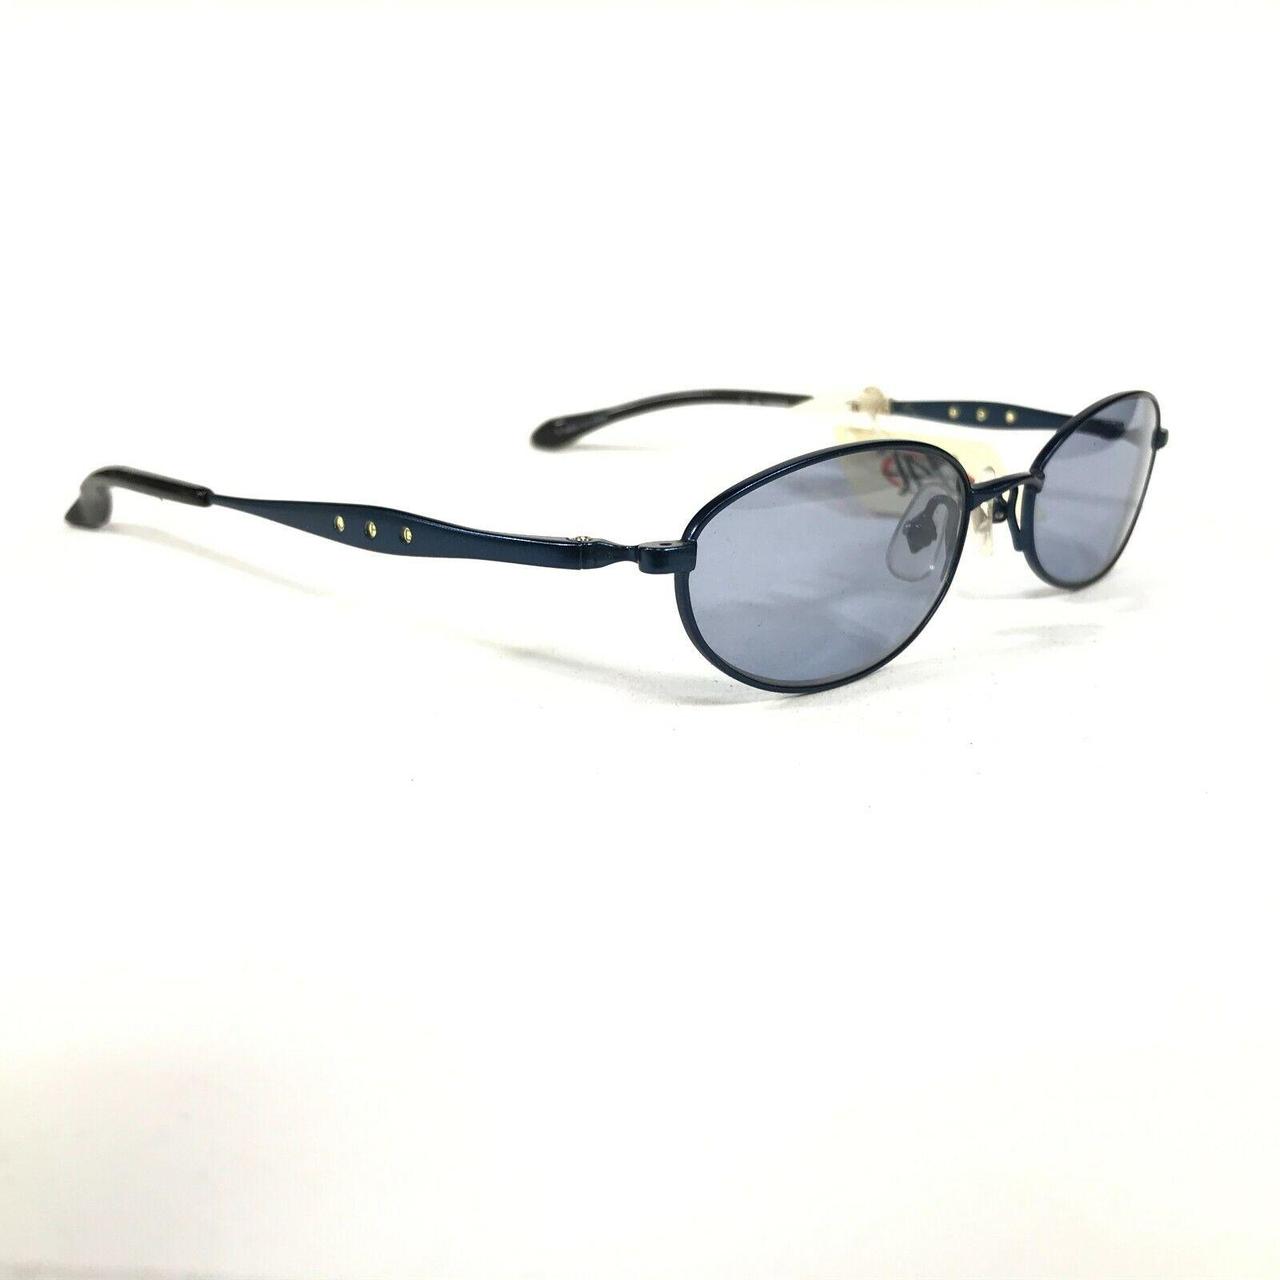 Product Image 3 - Vintage JPG Sunglasses 58-0066 Blue